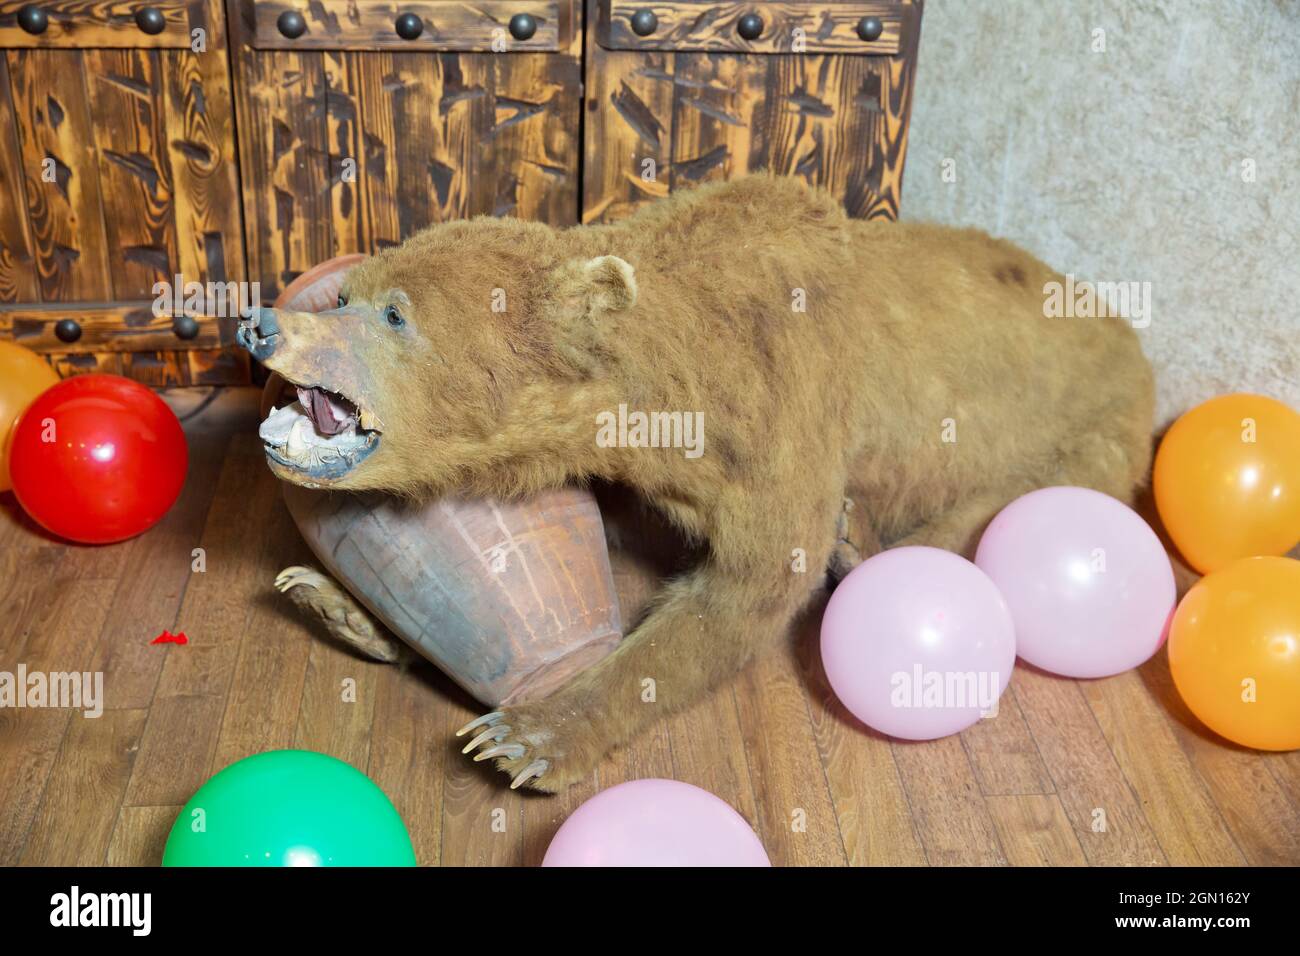 Pelle di un orso all'interno del ristorante . Pelle di orso nel ristorante. L'orso apre la bocca e ha una ciotola in mano. Foto Stock